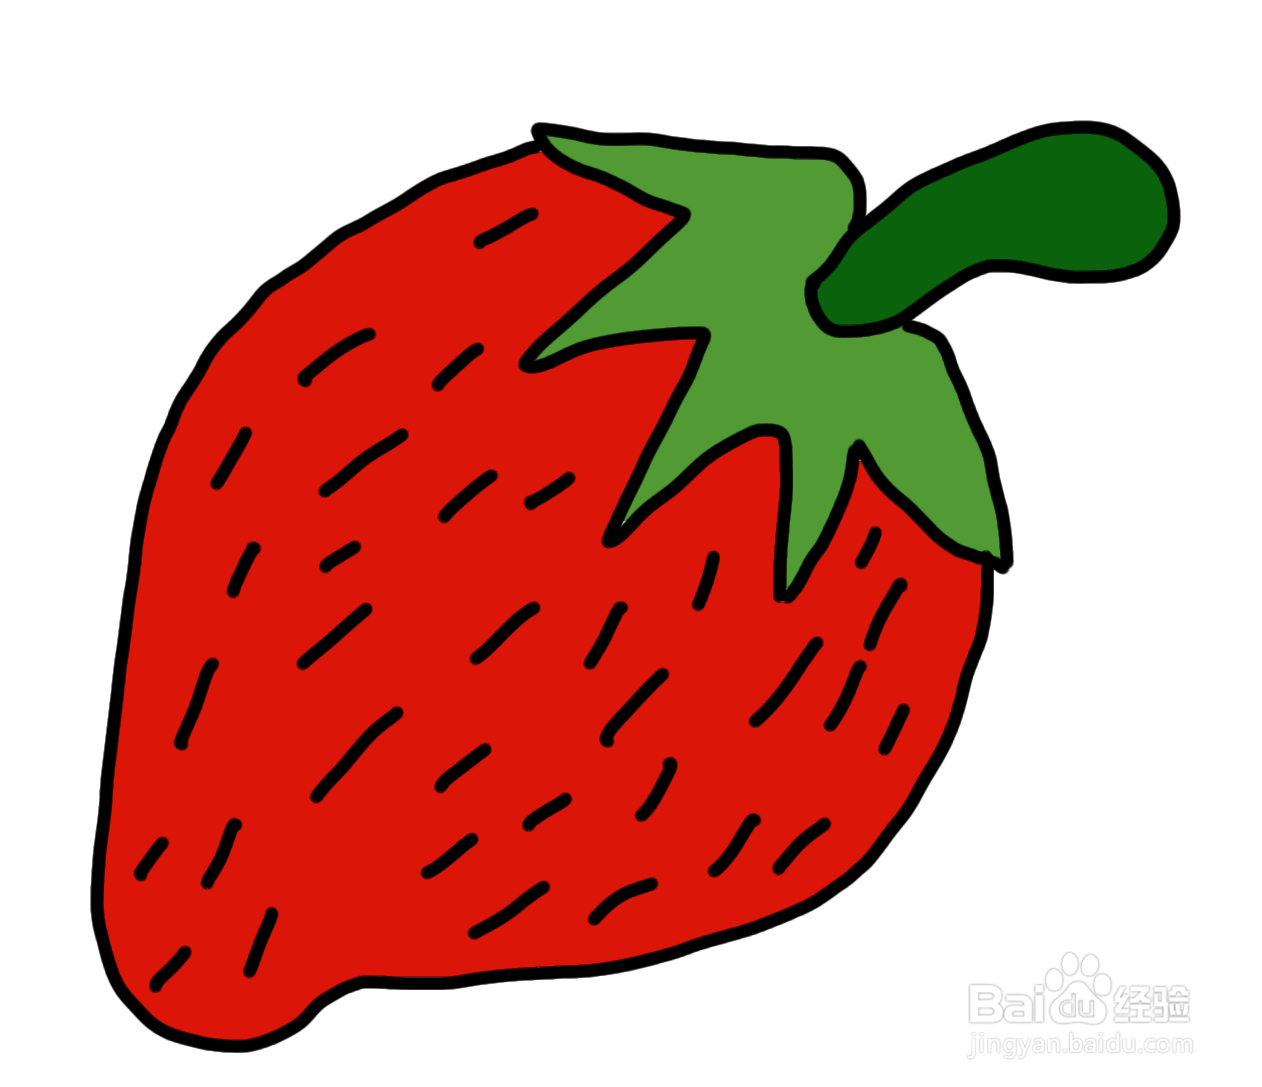 草莓简笔画图片带颜色图片